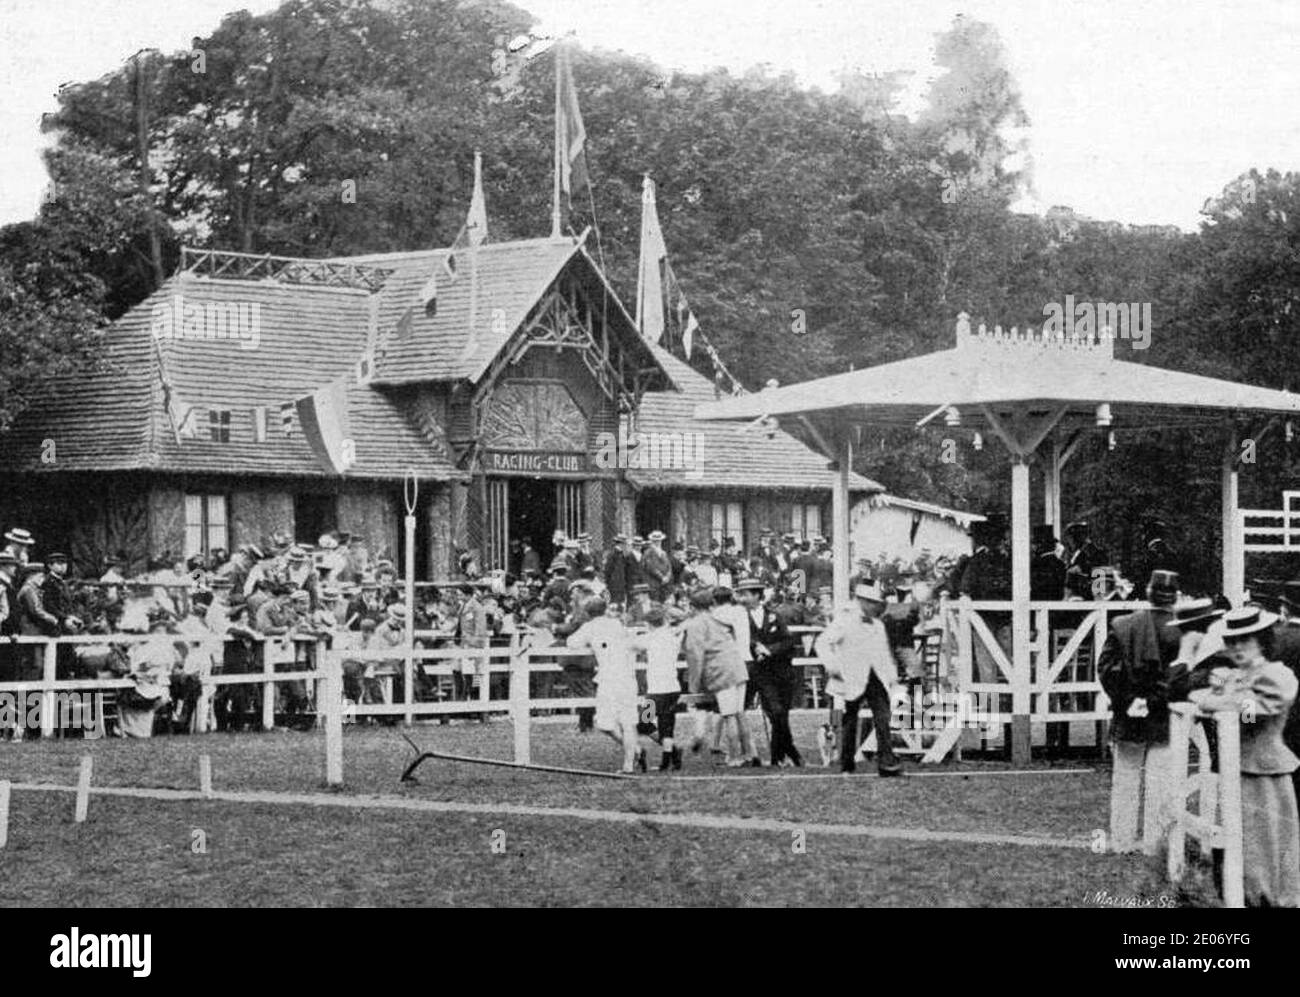 Le Nouveau Chalet de Racing Club de France, en juillet 1896 pour les championnats de France d'atlhétisme. Foto Stock